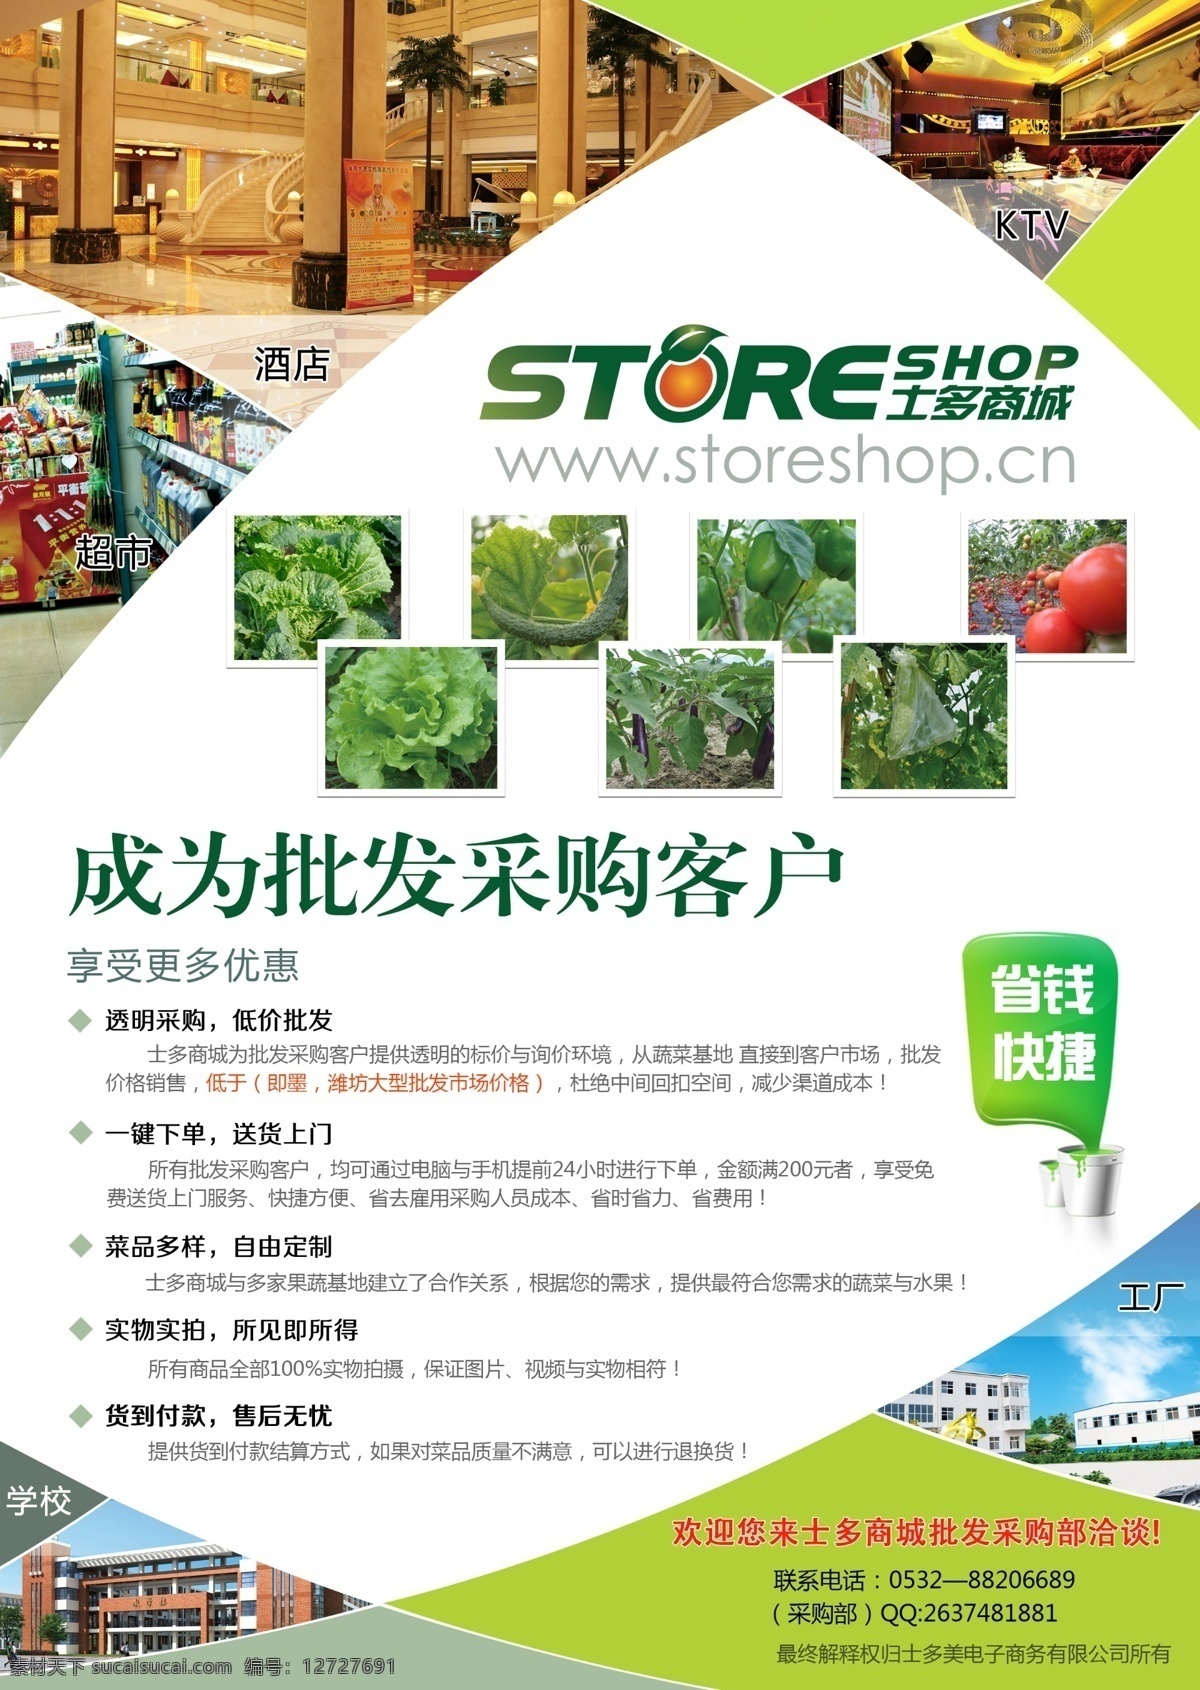 蔬菜水果 批发 宣传单 页 psd素材 蔬菜 水工 商城宣传单 白色